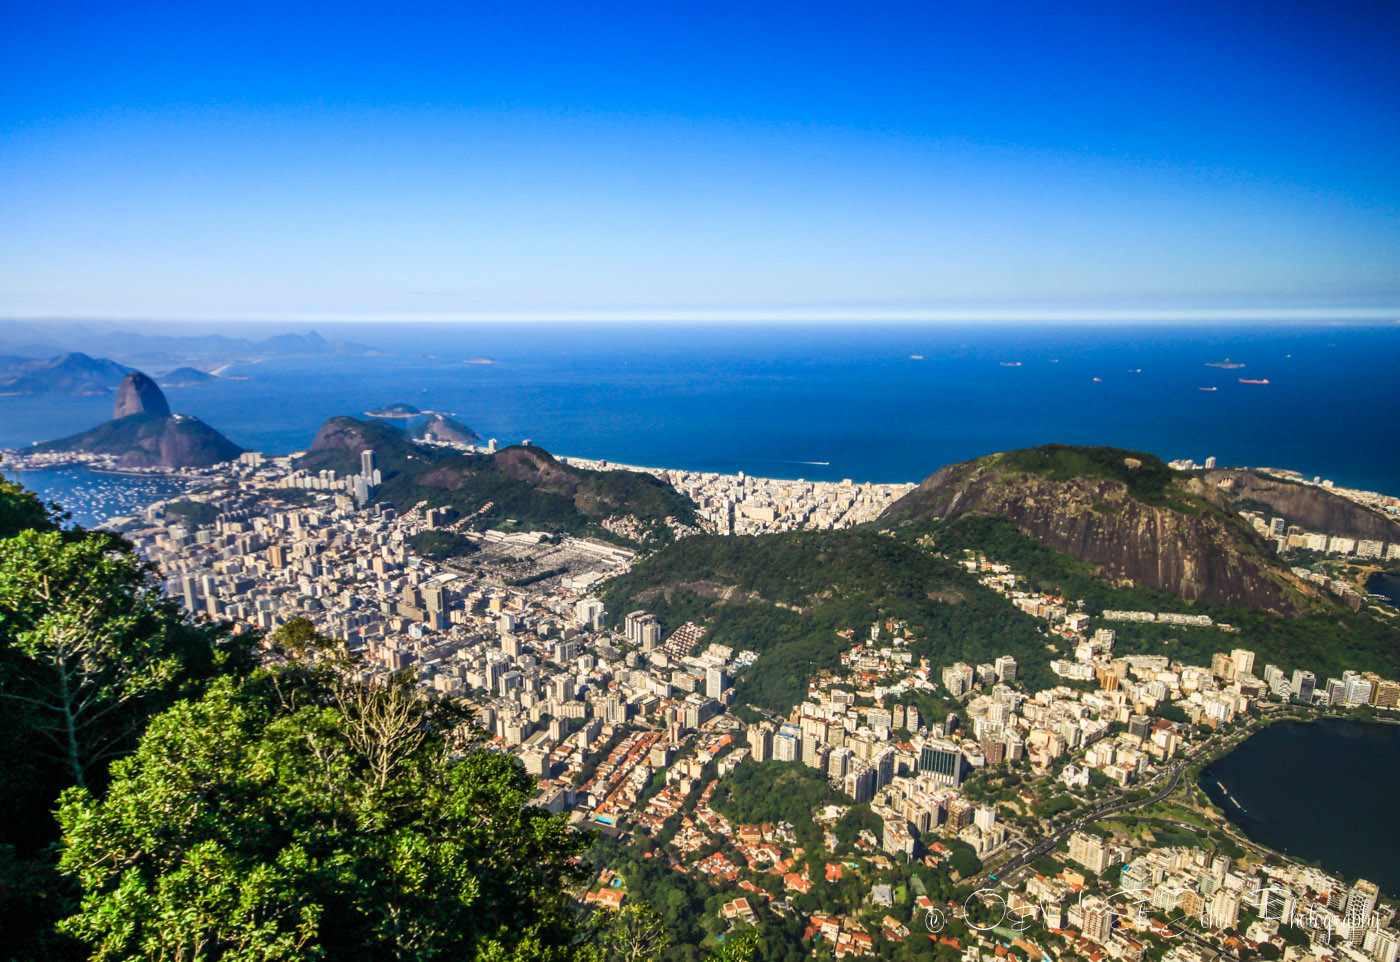 View from the top of Corcovado Mountain, Rio de Janeiro, Brazil